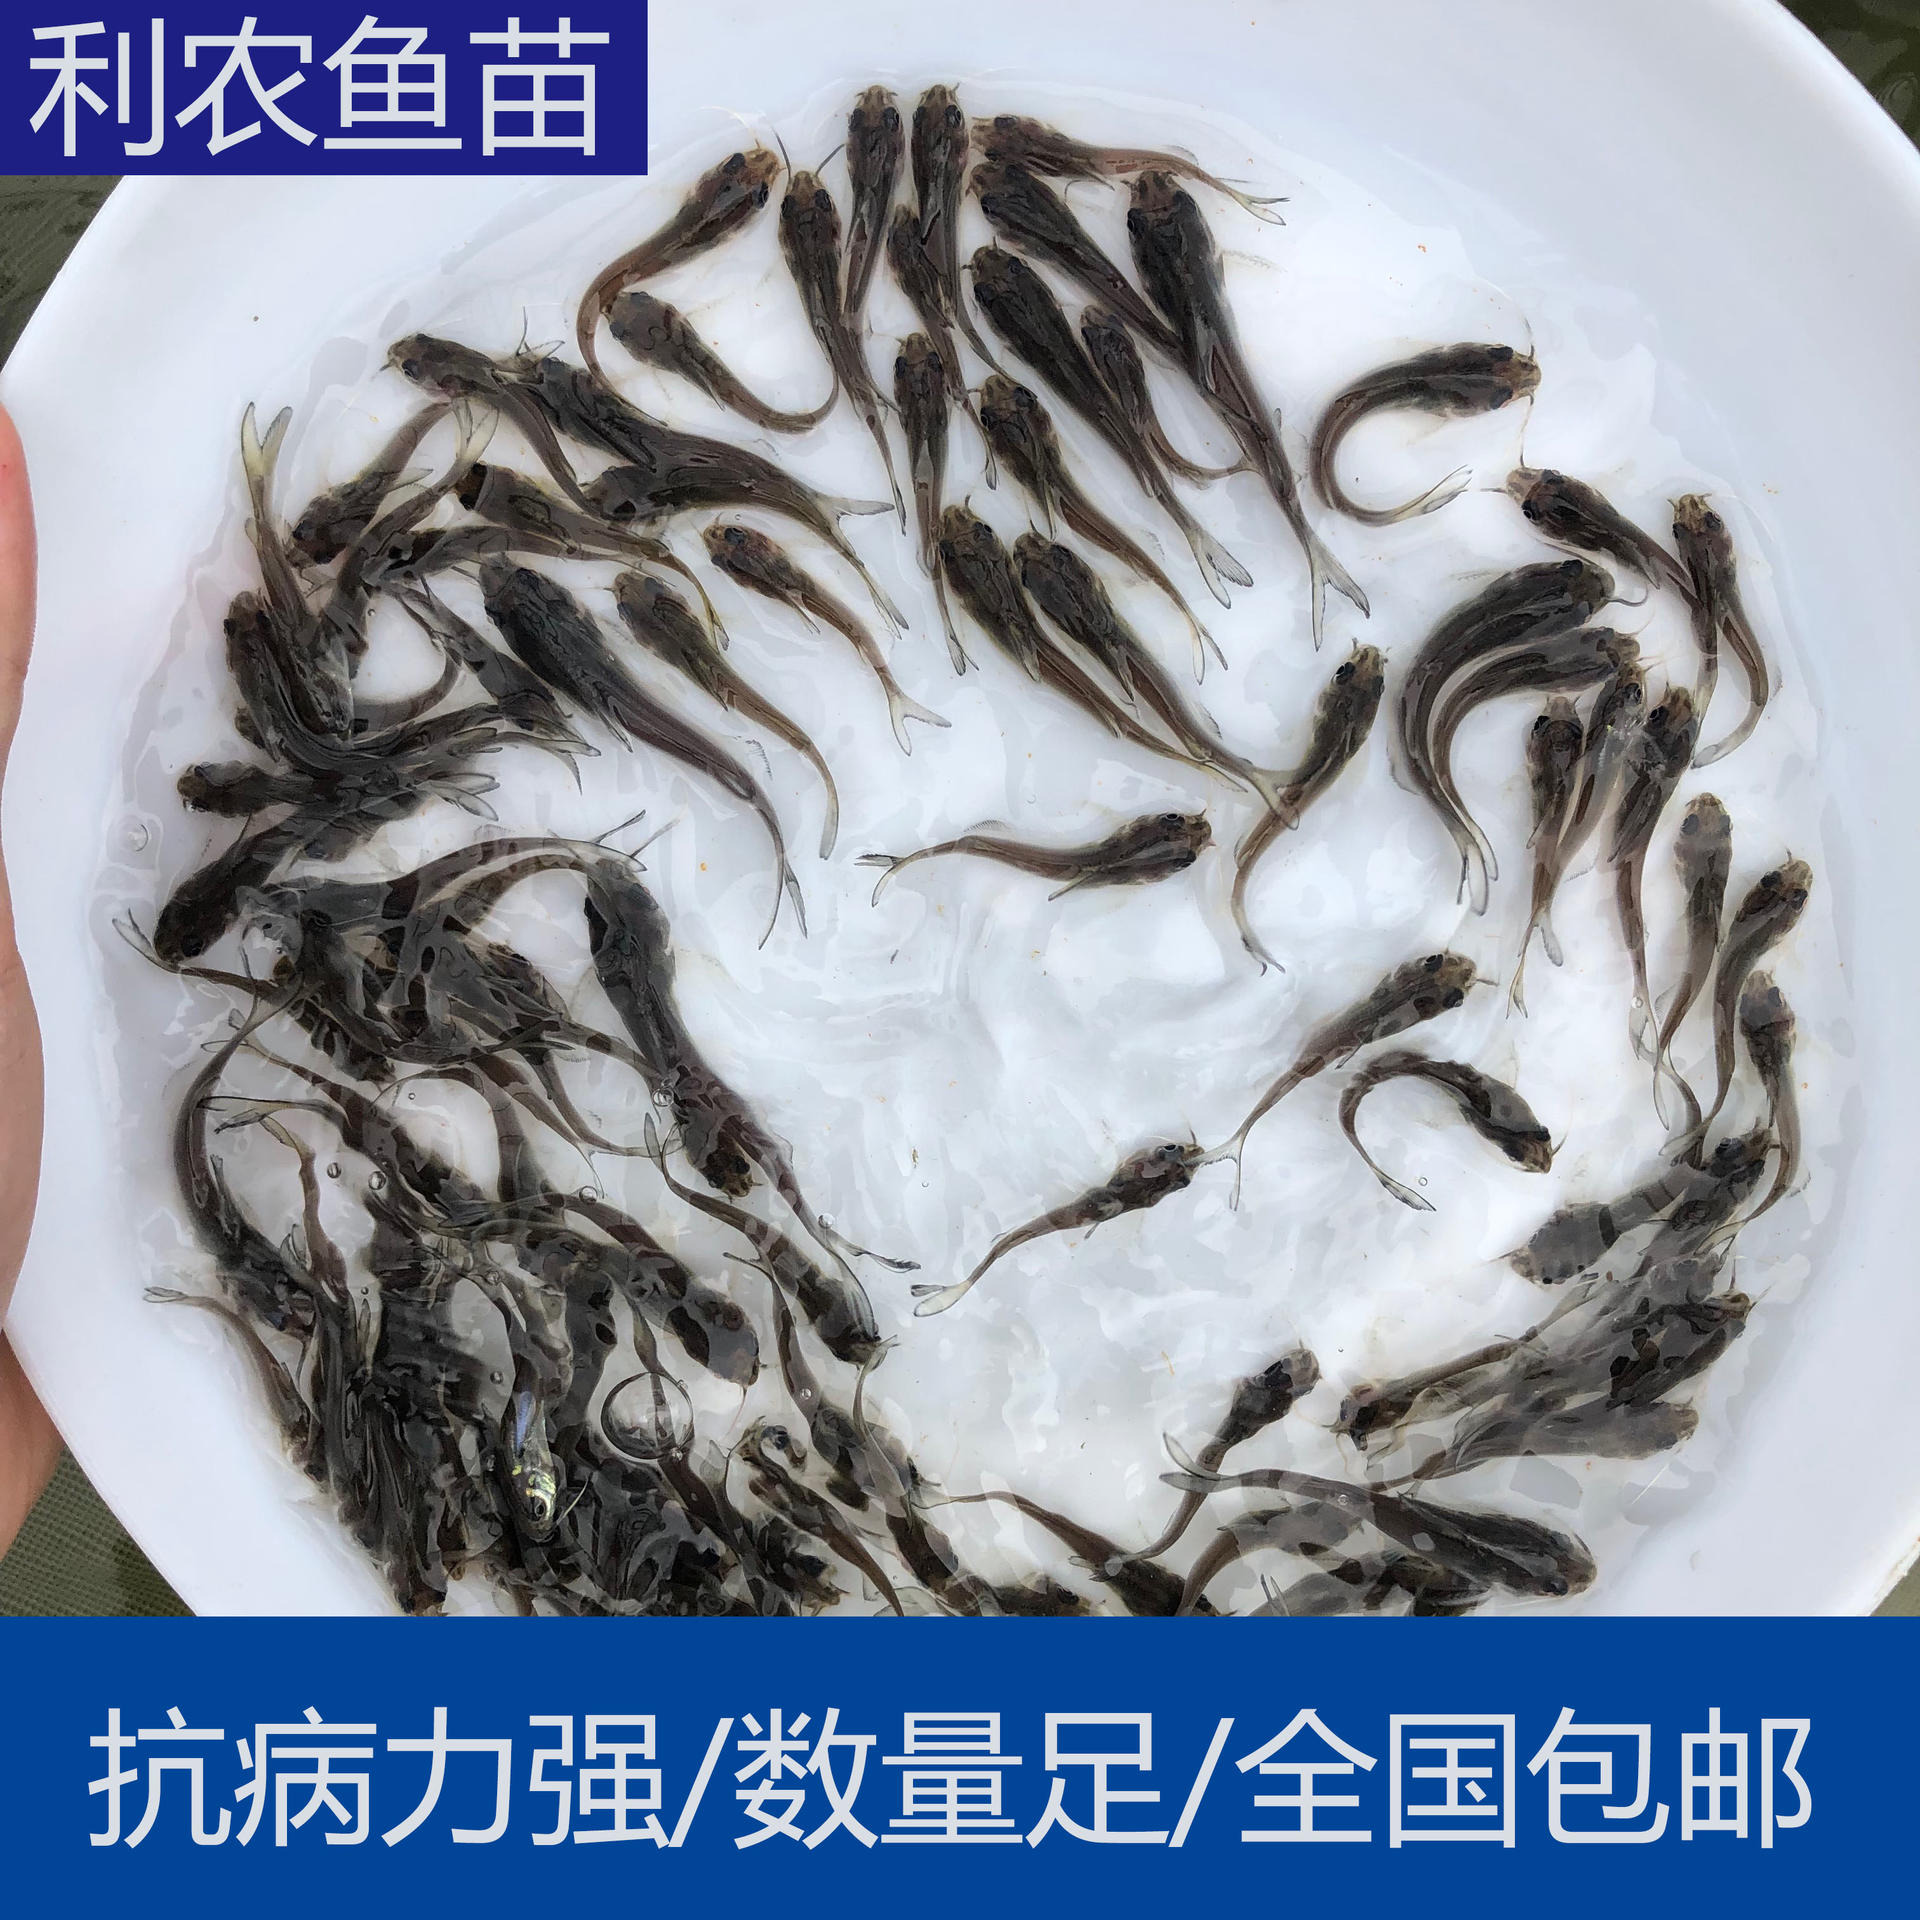 技术指导 广西北海叉尾鱼苗批发养殖场 5cm叉尾鱼苗出售